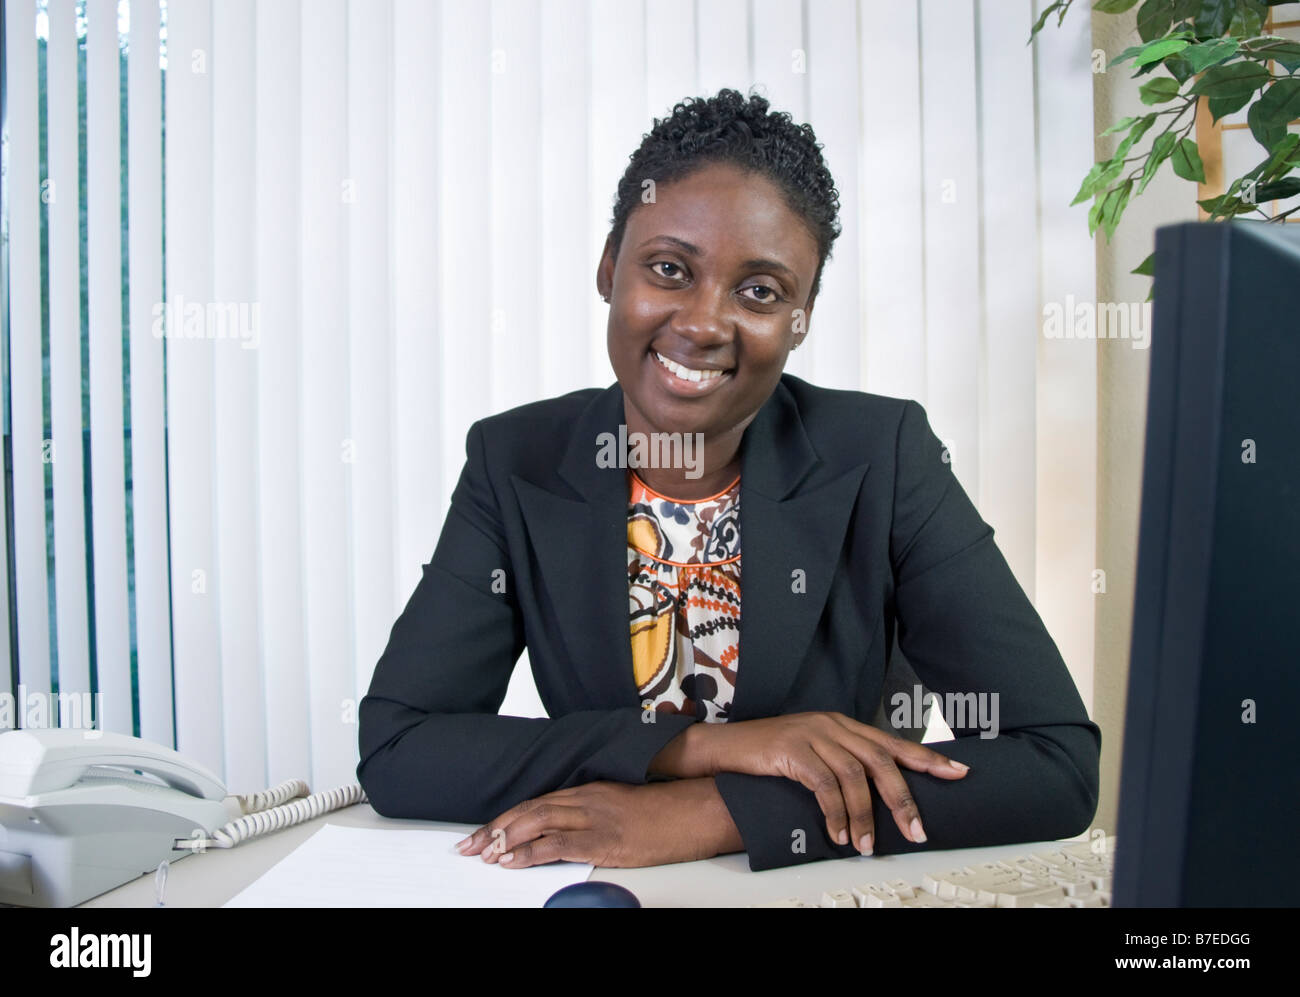 Eine schöne junge schwarze Frau in einer Büroumgebung eine Art freundlich Lächeln Stockfoto